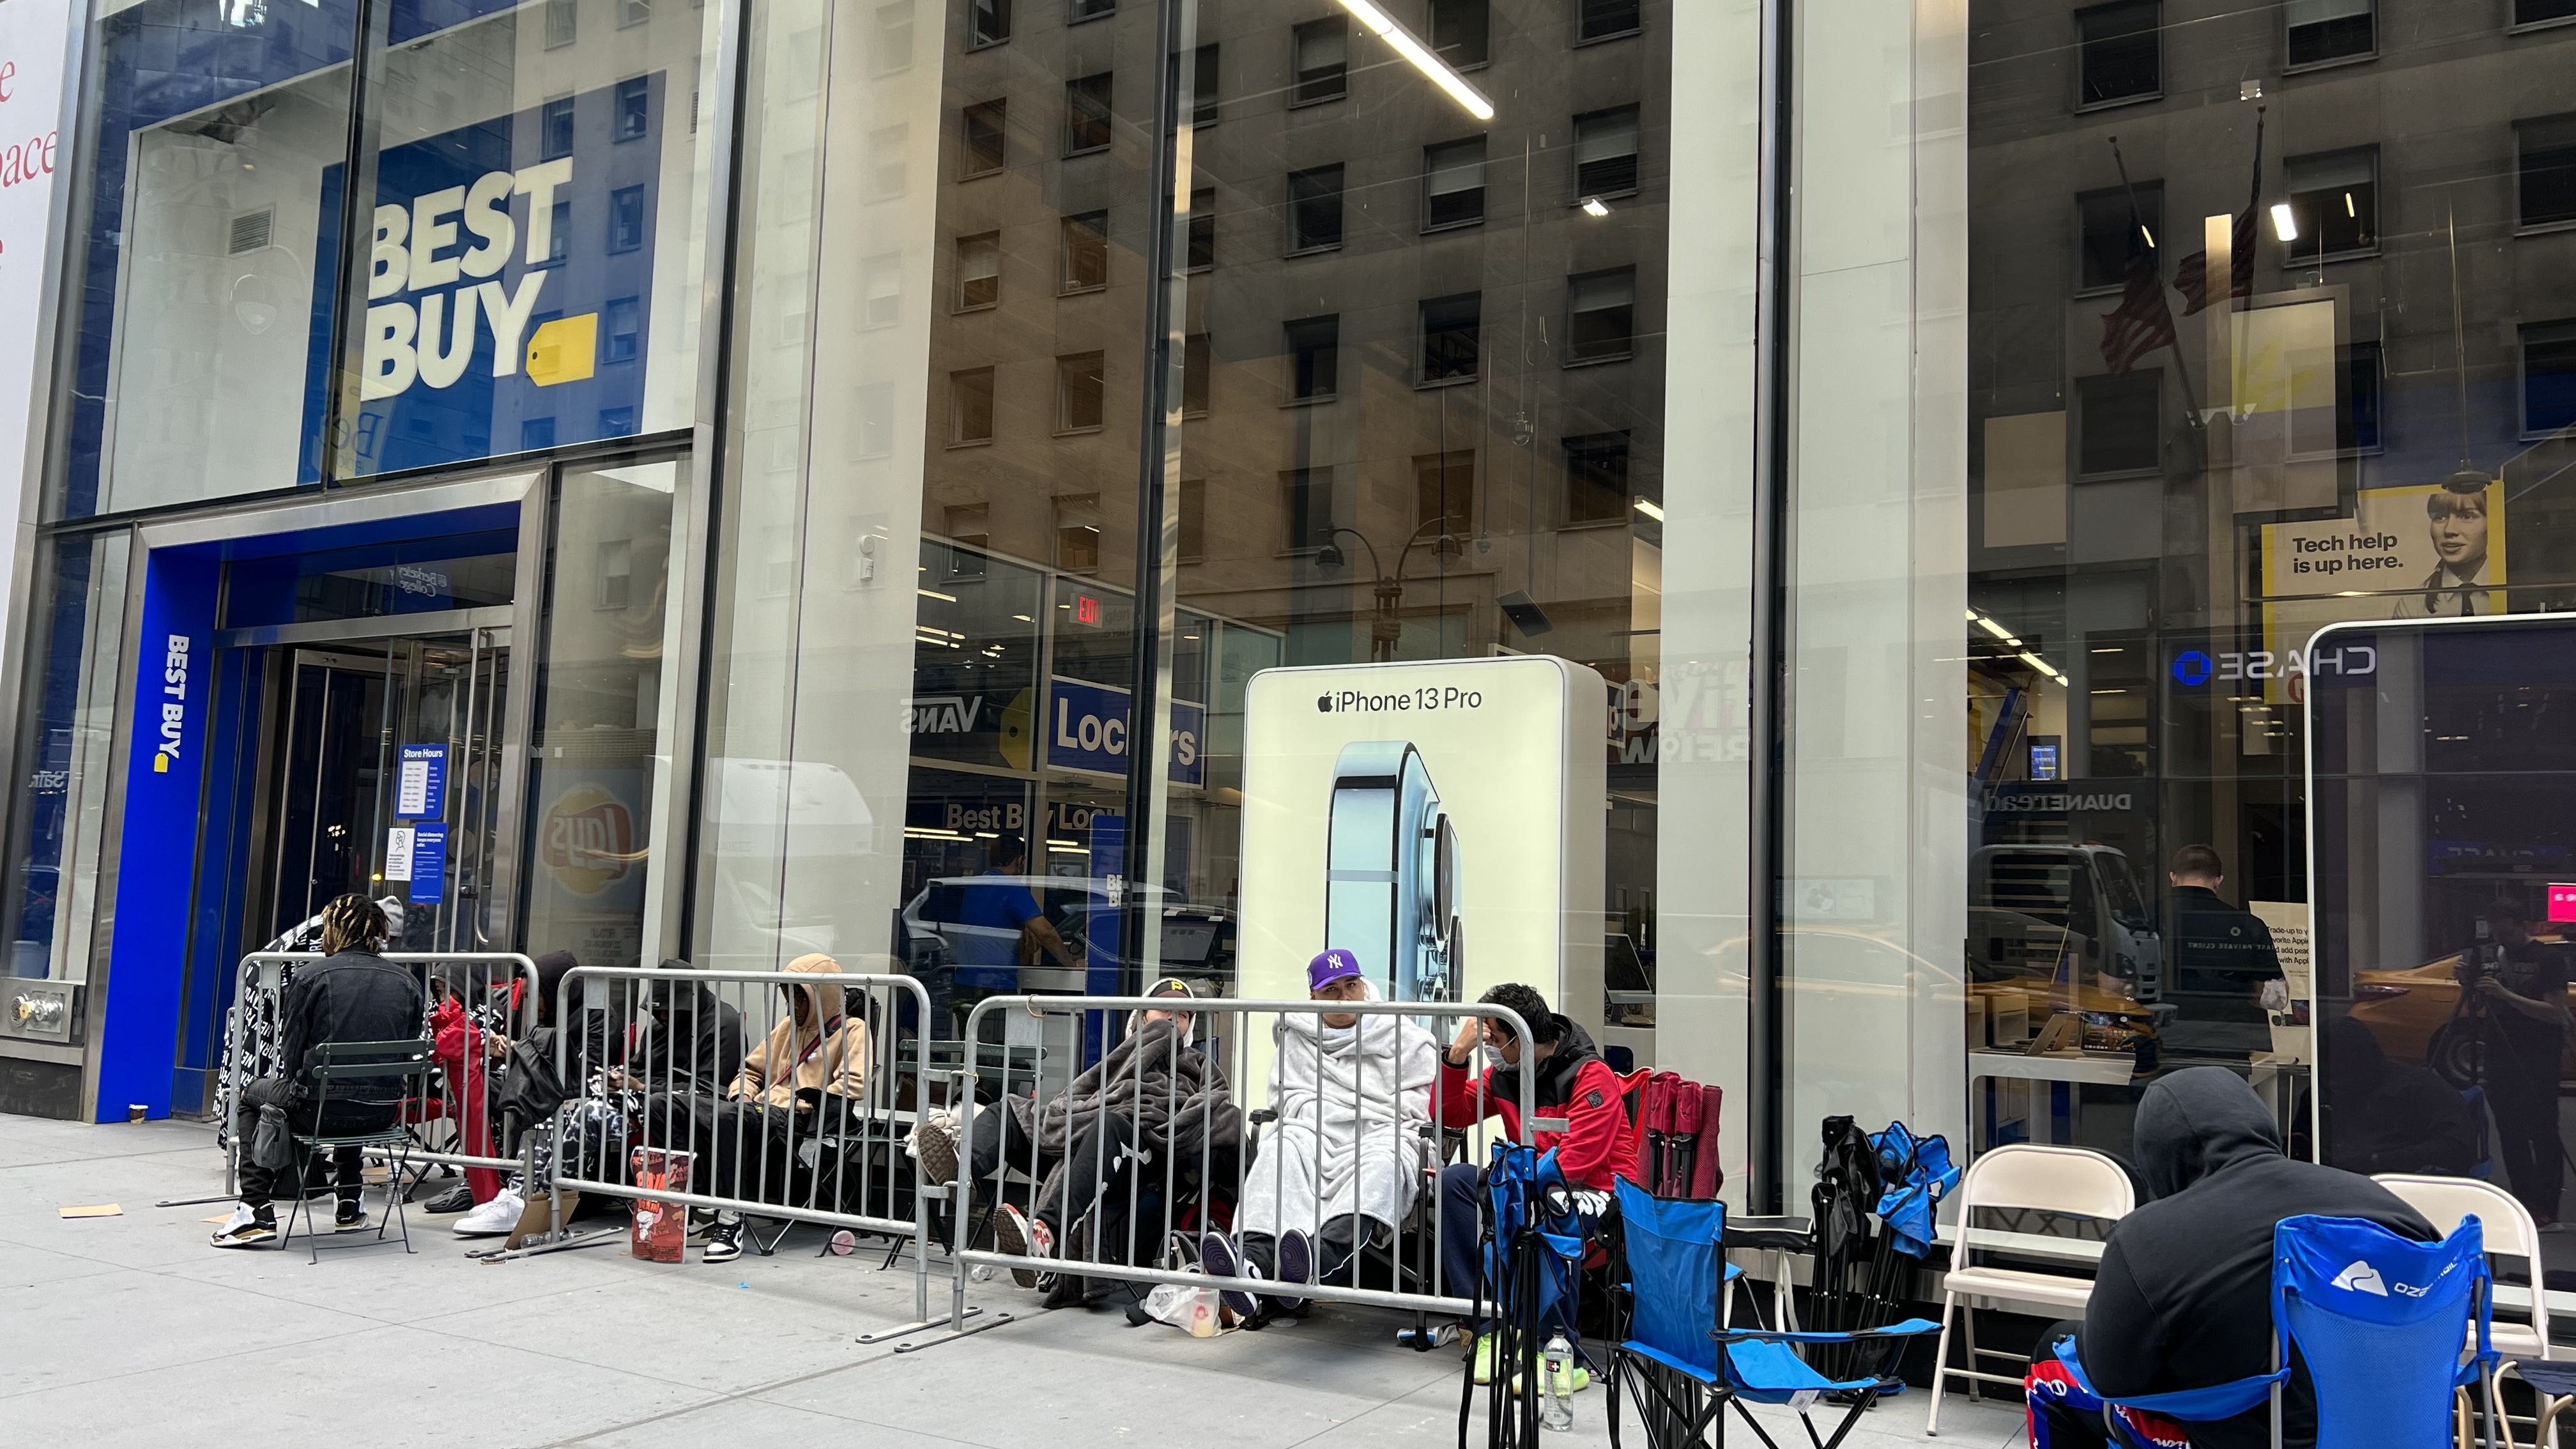 Orang-orang di NYC berkemah dalam antrean untuk mendapatkan kartu grafis baru dari Best Buy